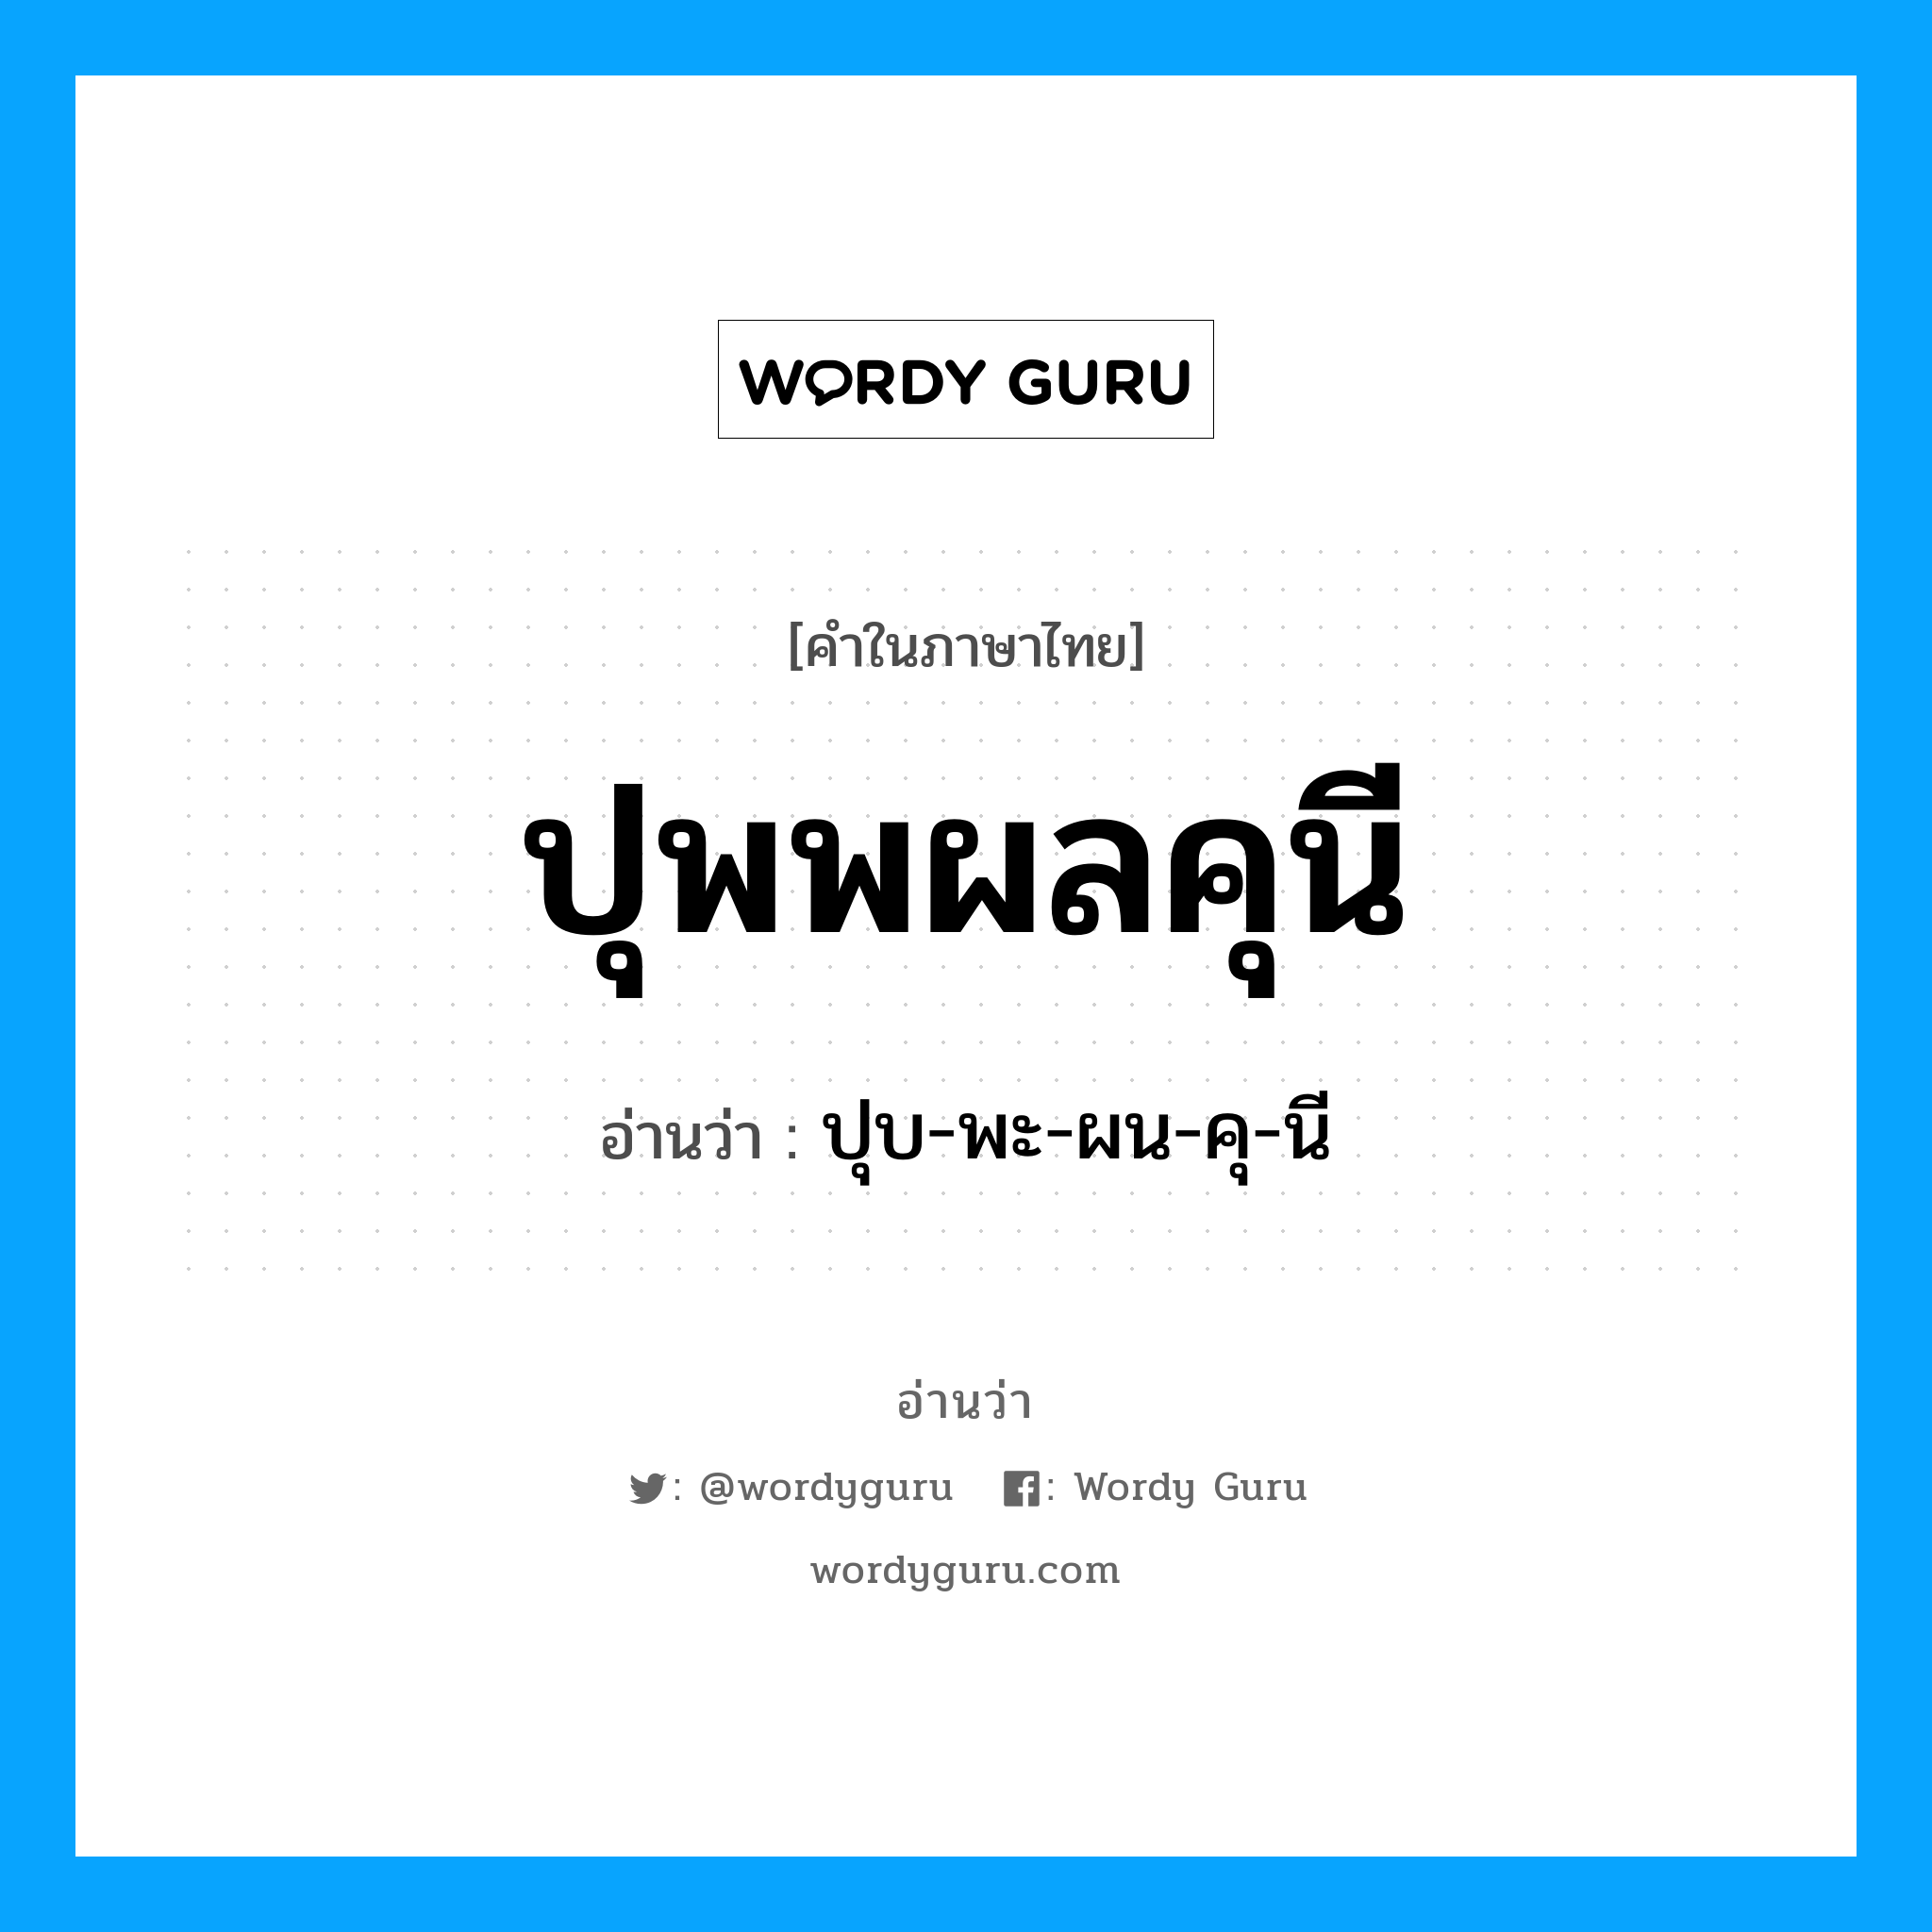 ปุบ-พะ-ผน-คุ-นี เป็นคำอ่านของคำไหน?, คำในภาษาไทย ปุบ-พะ-ผน-คุ-นี อ่านว่า ปุพพผลคุนี